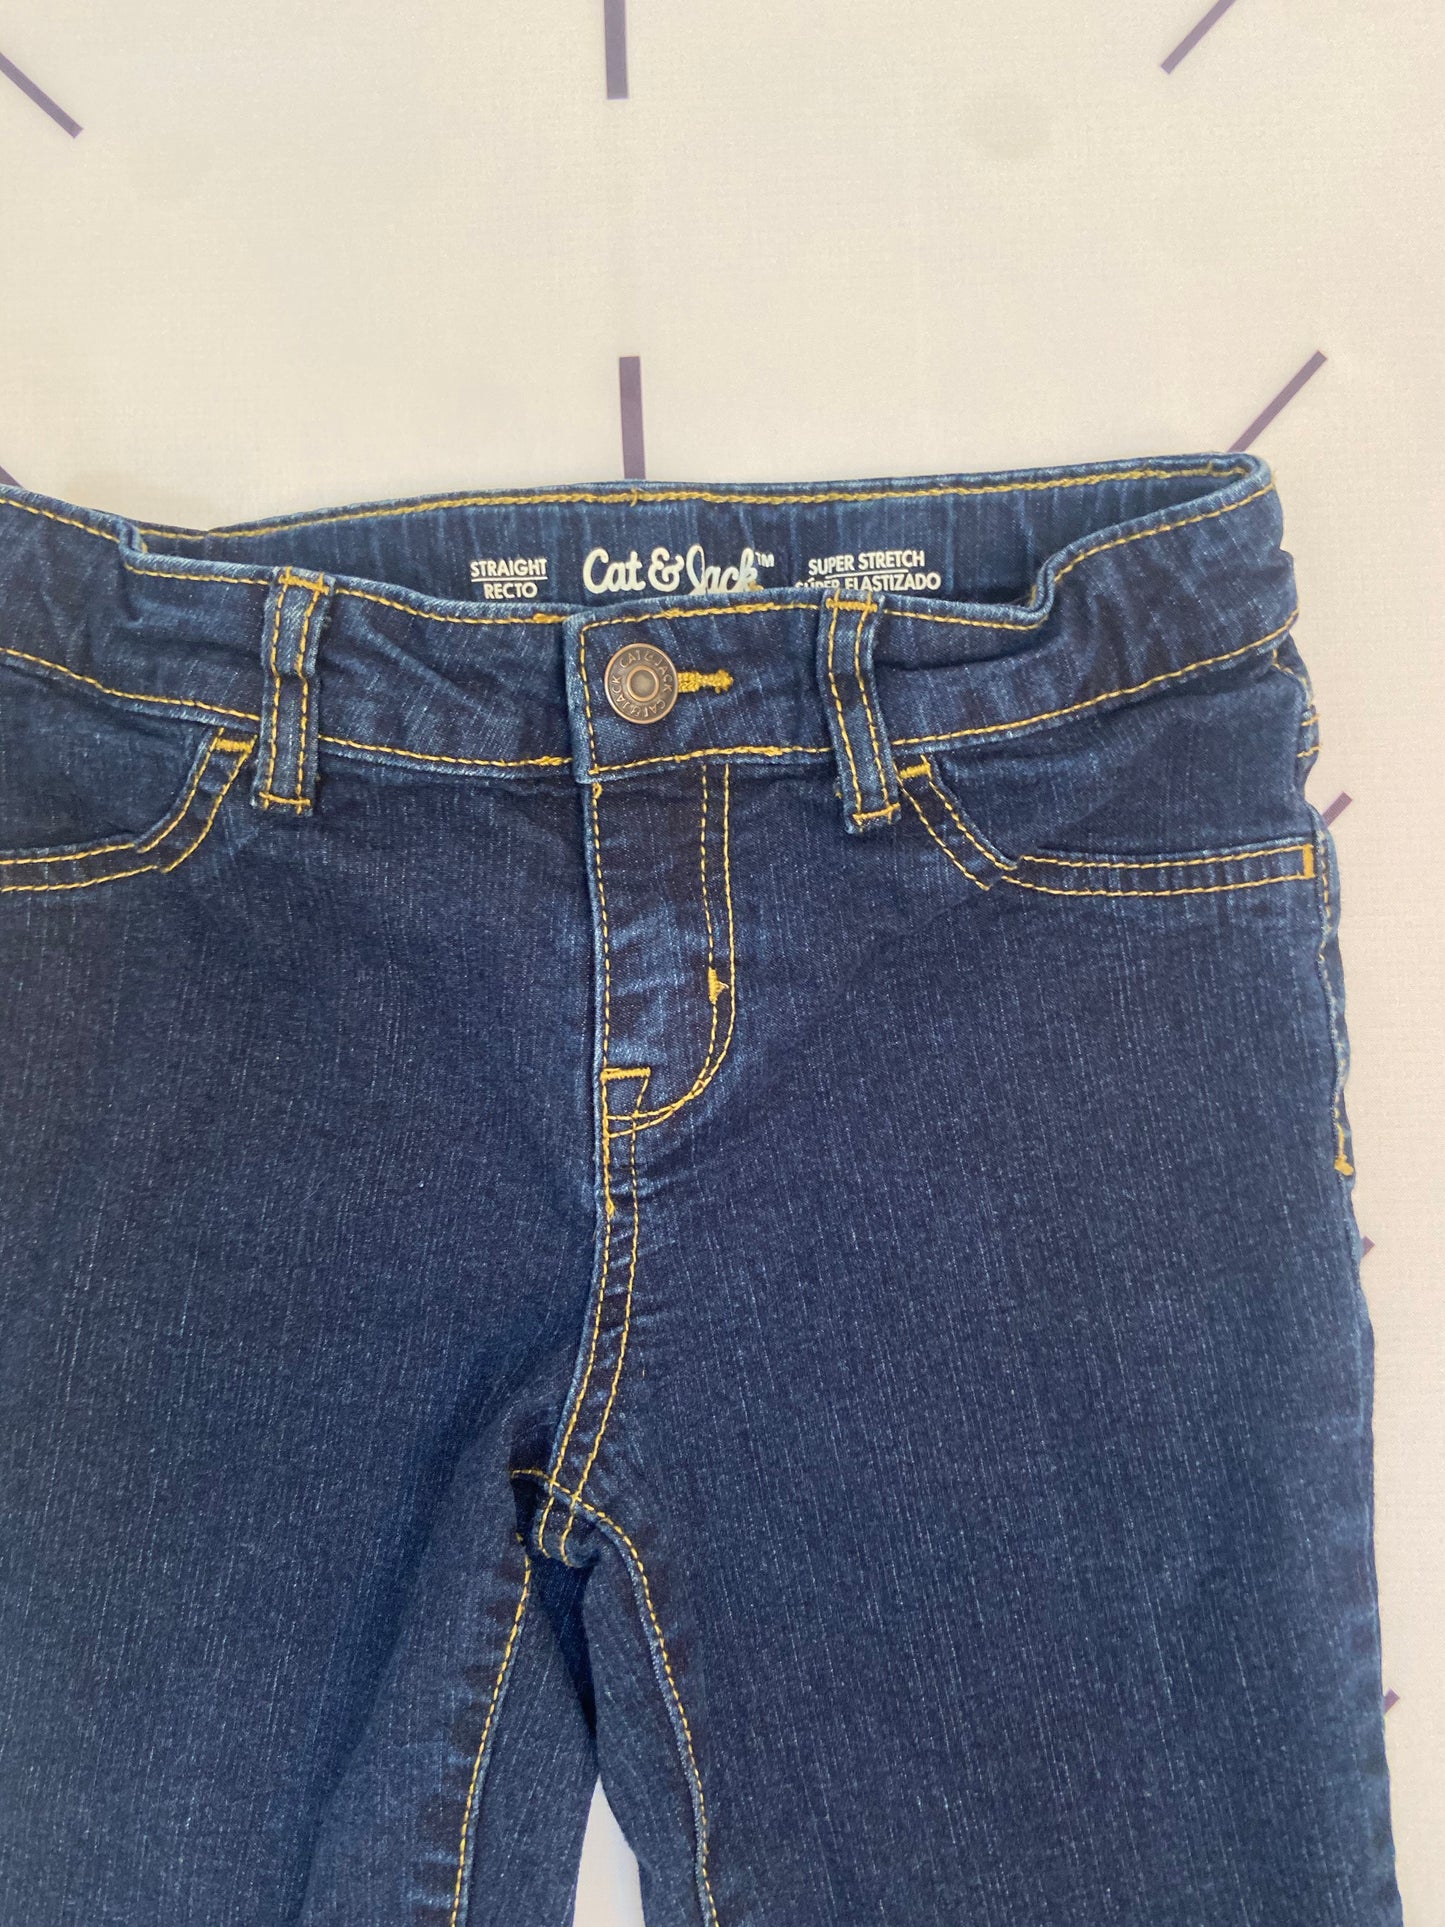 Dark Wash Jeans- 6x